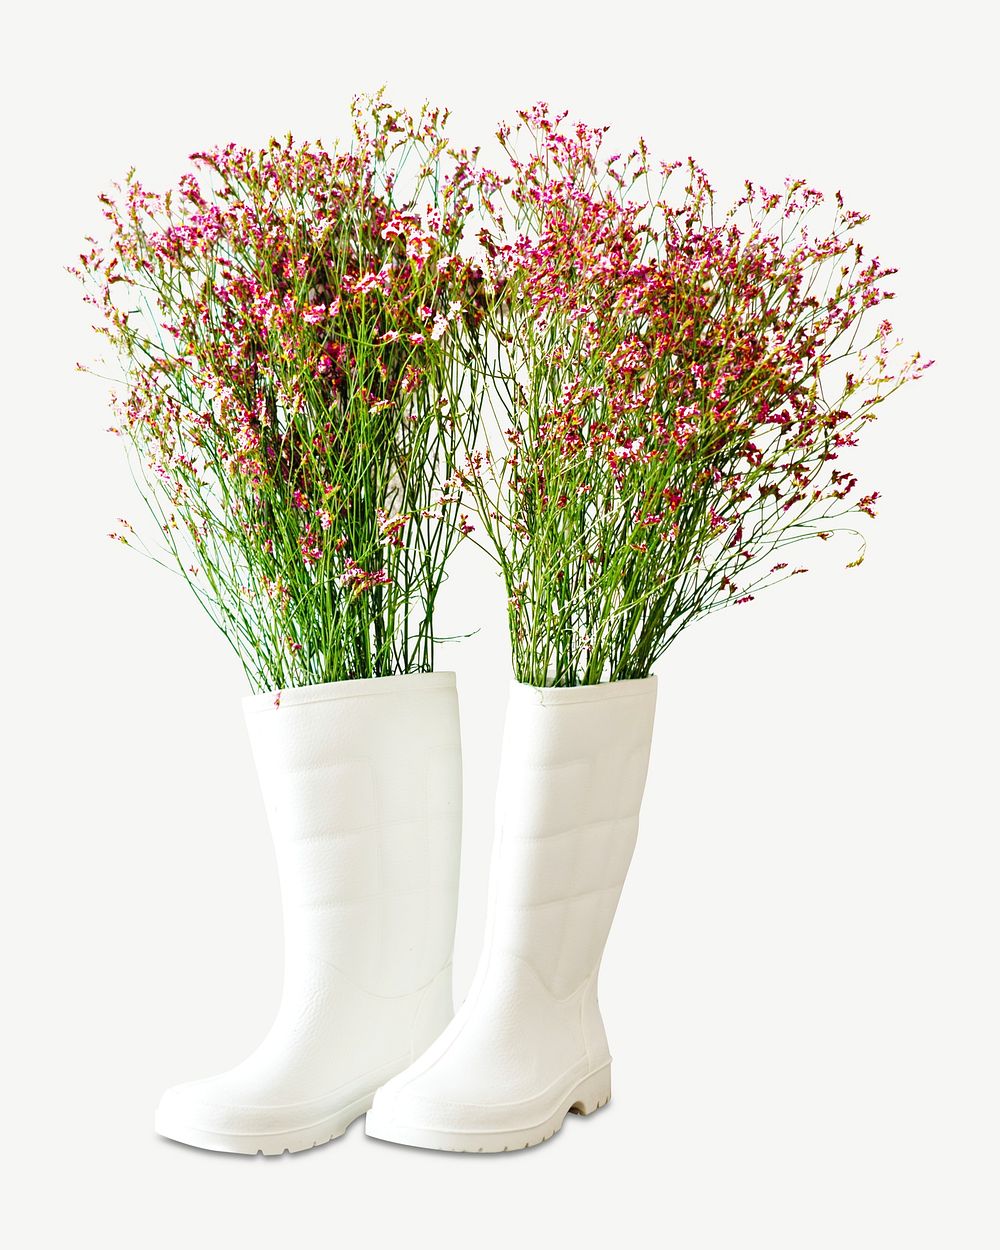 Garden boots, flower image psd